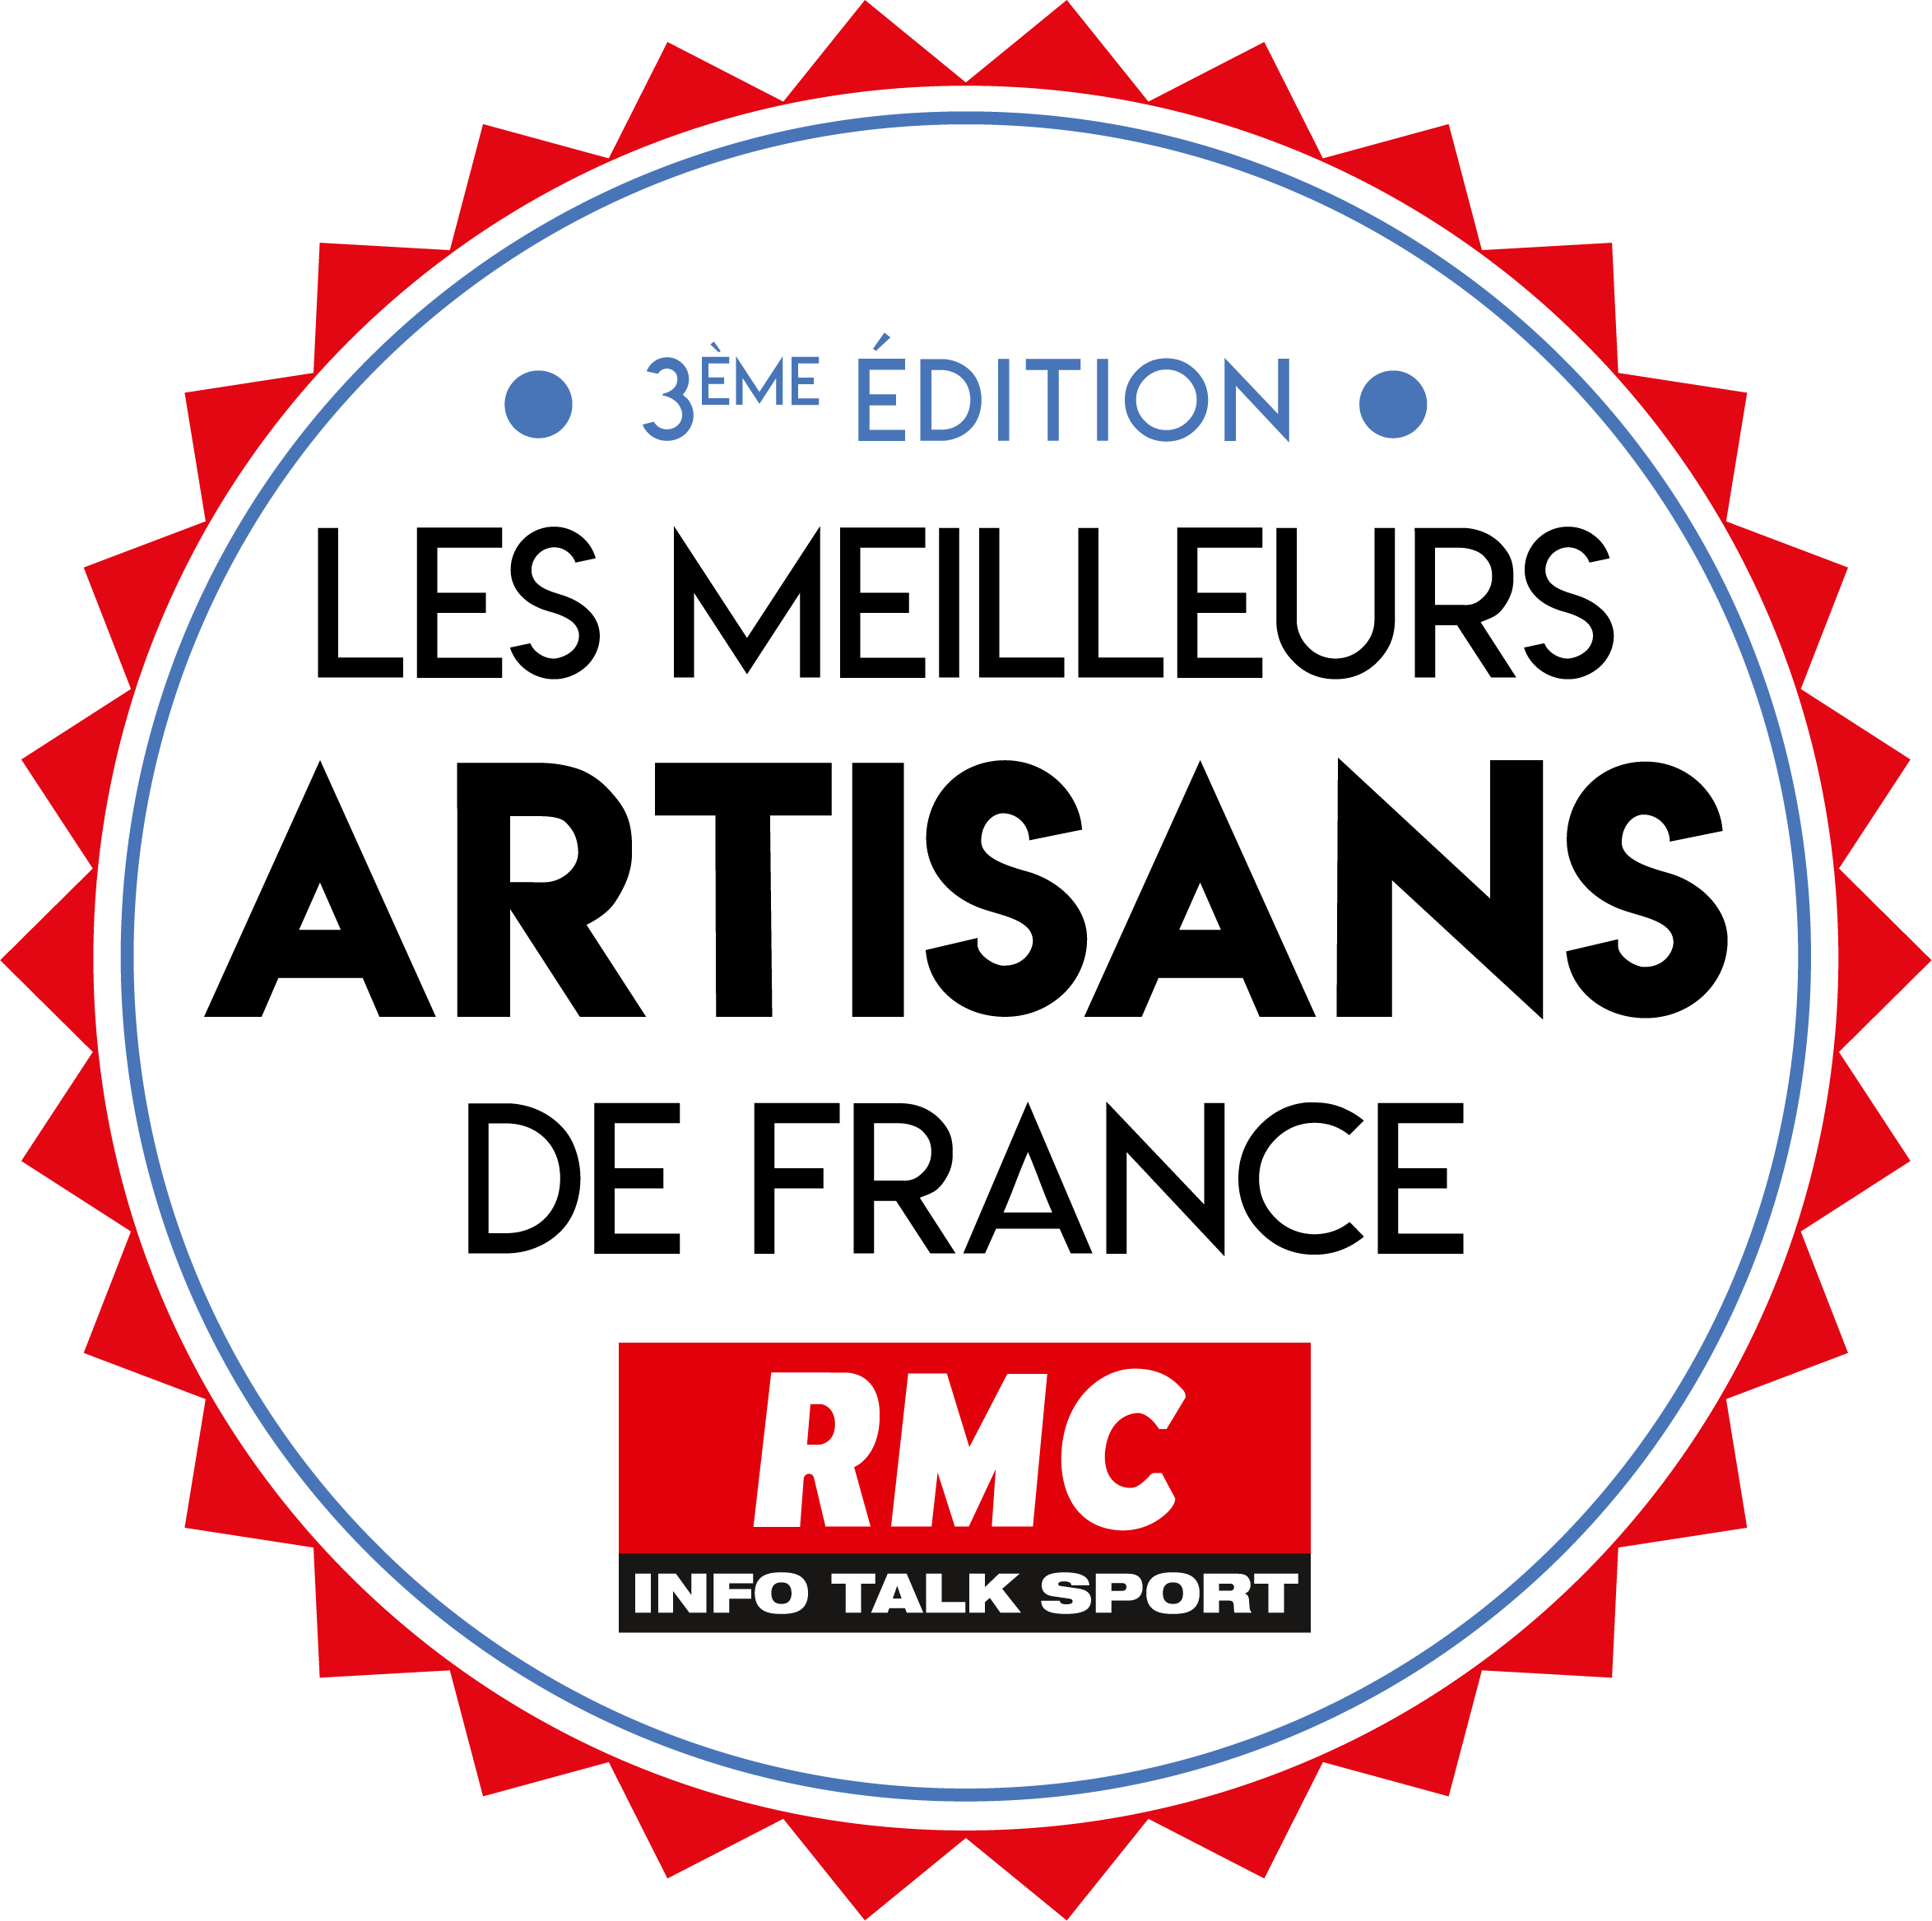 Les Meilleurs Artisans de France RMC